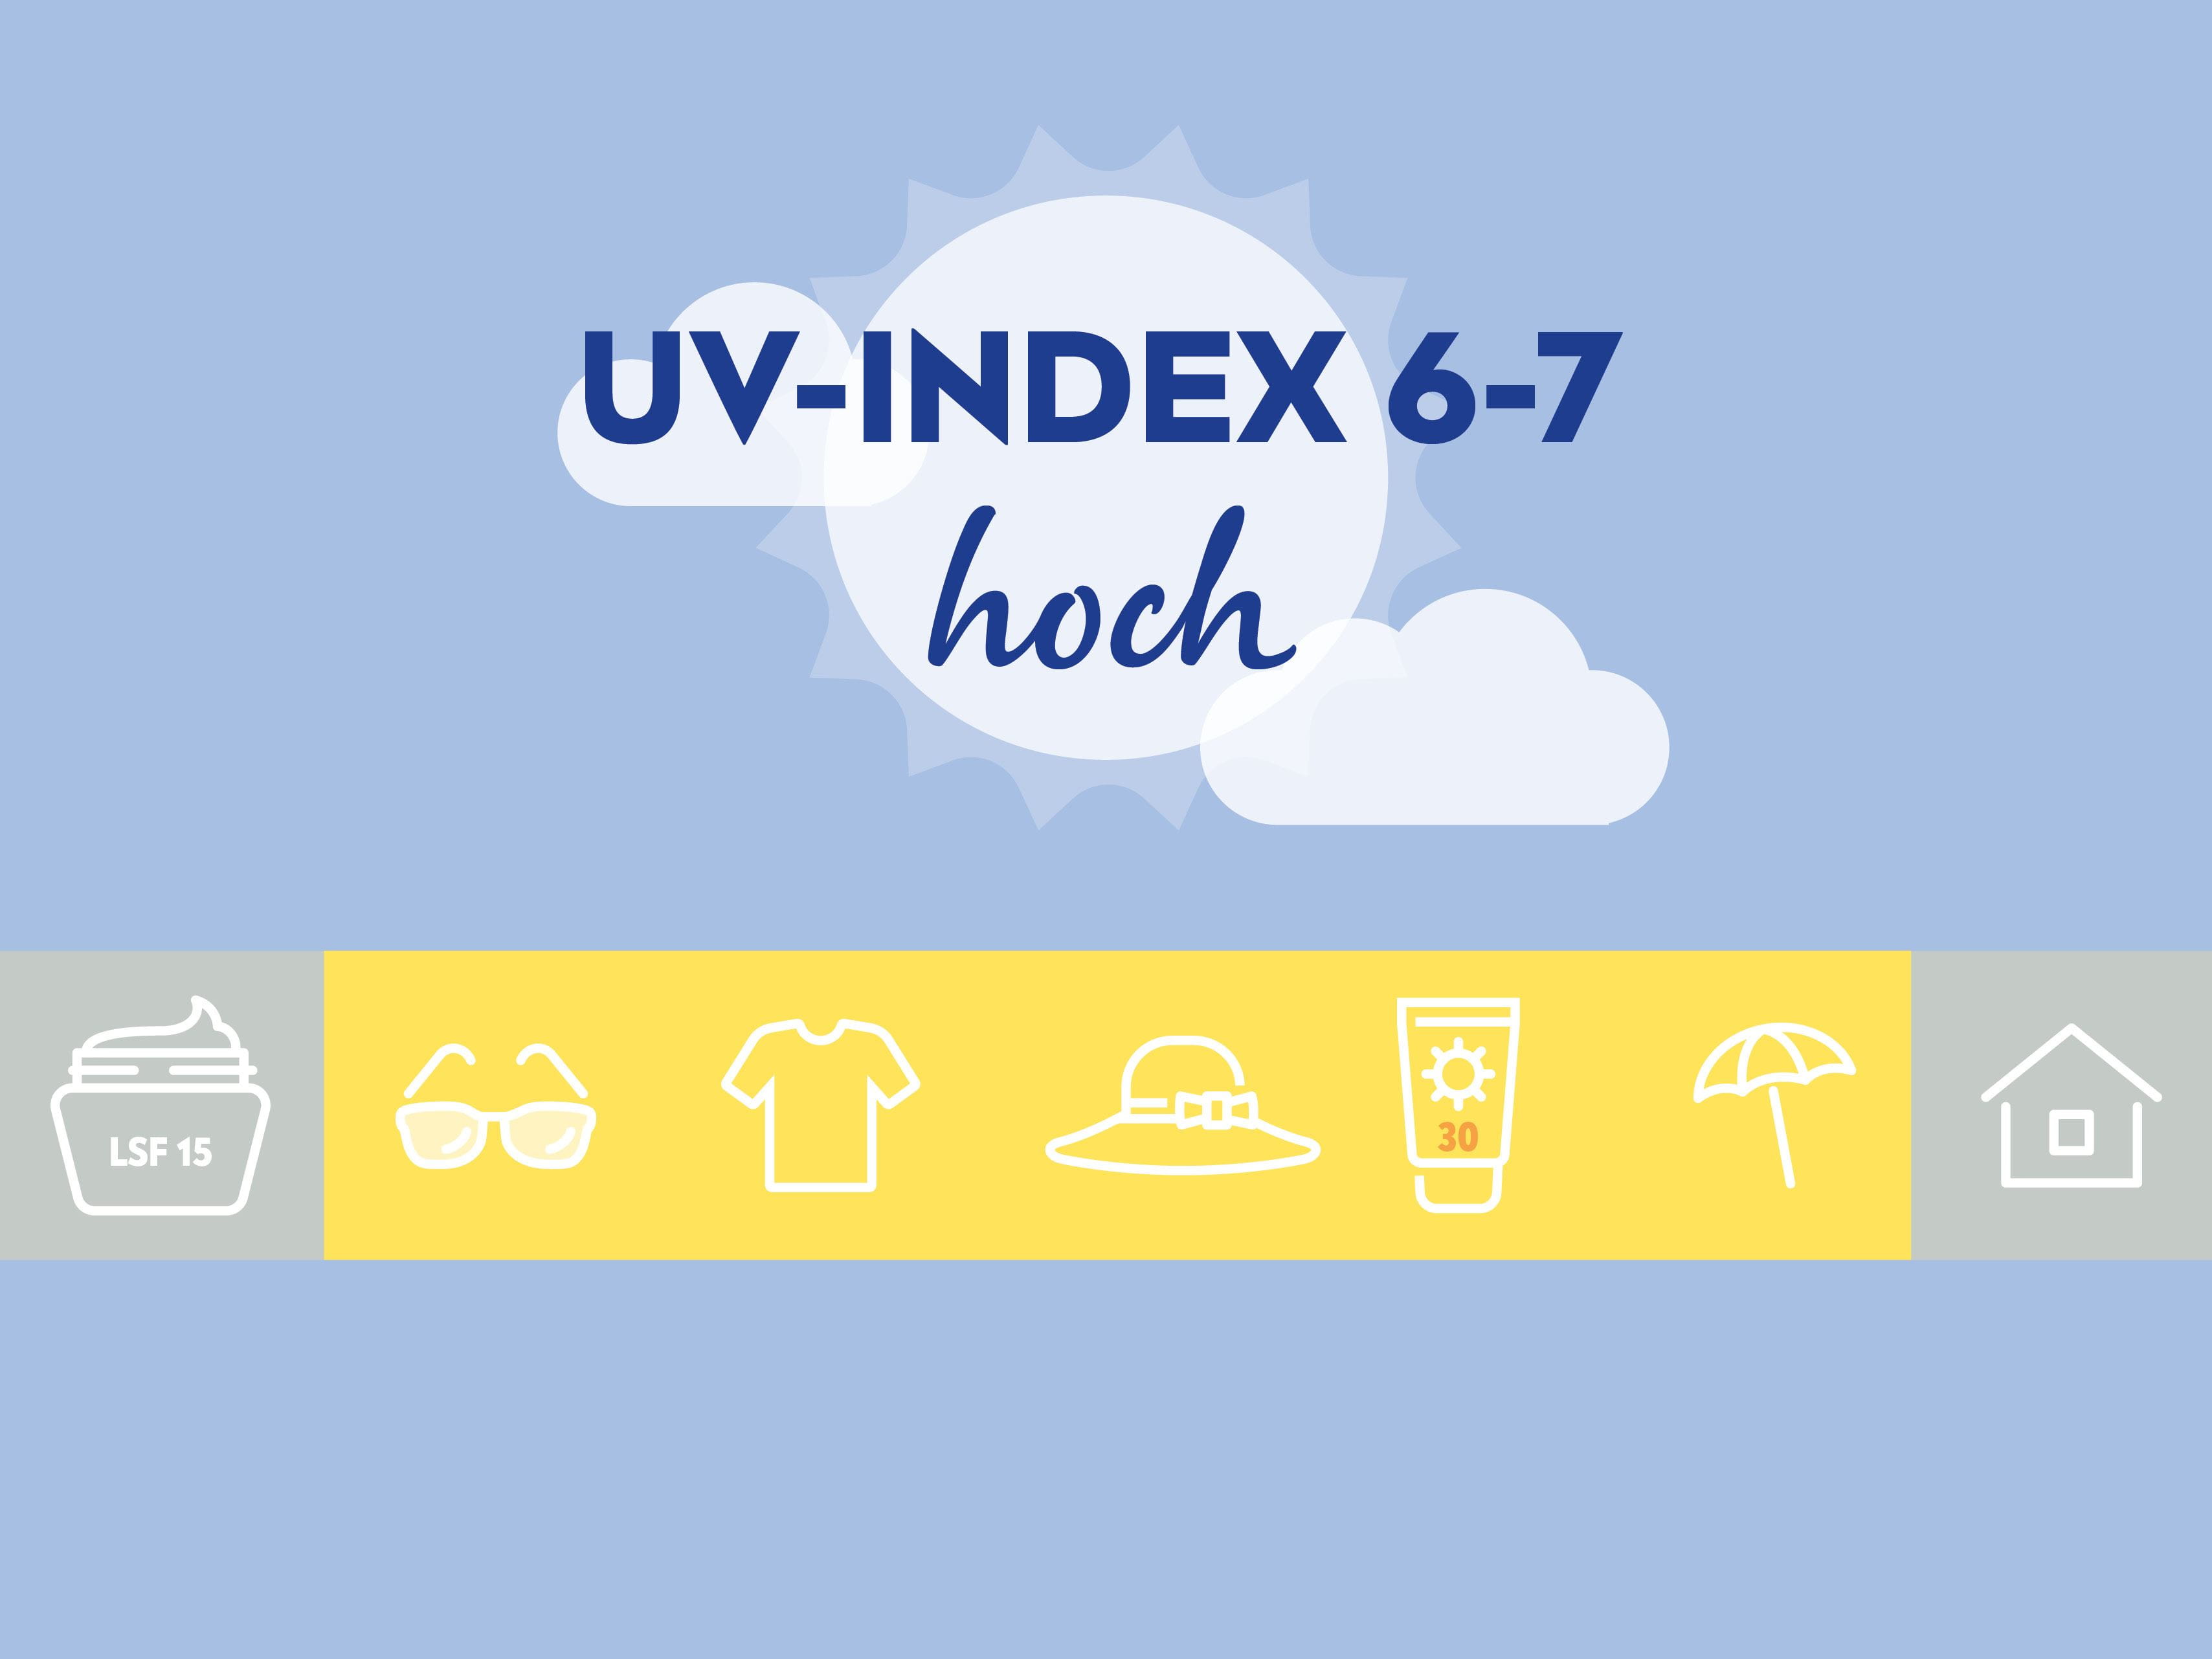  Bei einem hohen UV-Index von 6-7 sollte man Sonnenschutz mit mindestens LSF 30 sowie Sonnenbrille, Kleidung und Hut tragen und sich zur Mittagszeit im Schatten aufhalten.